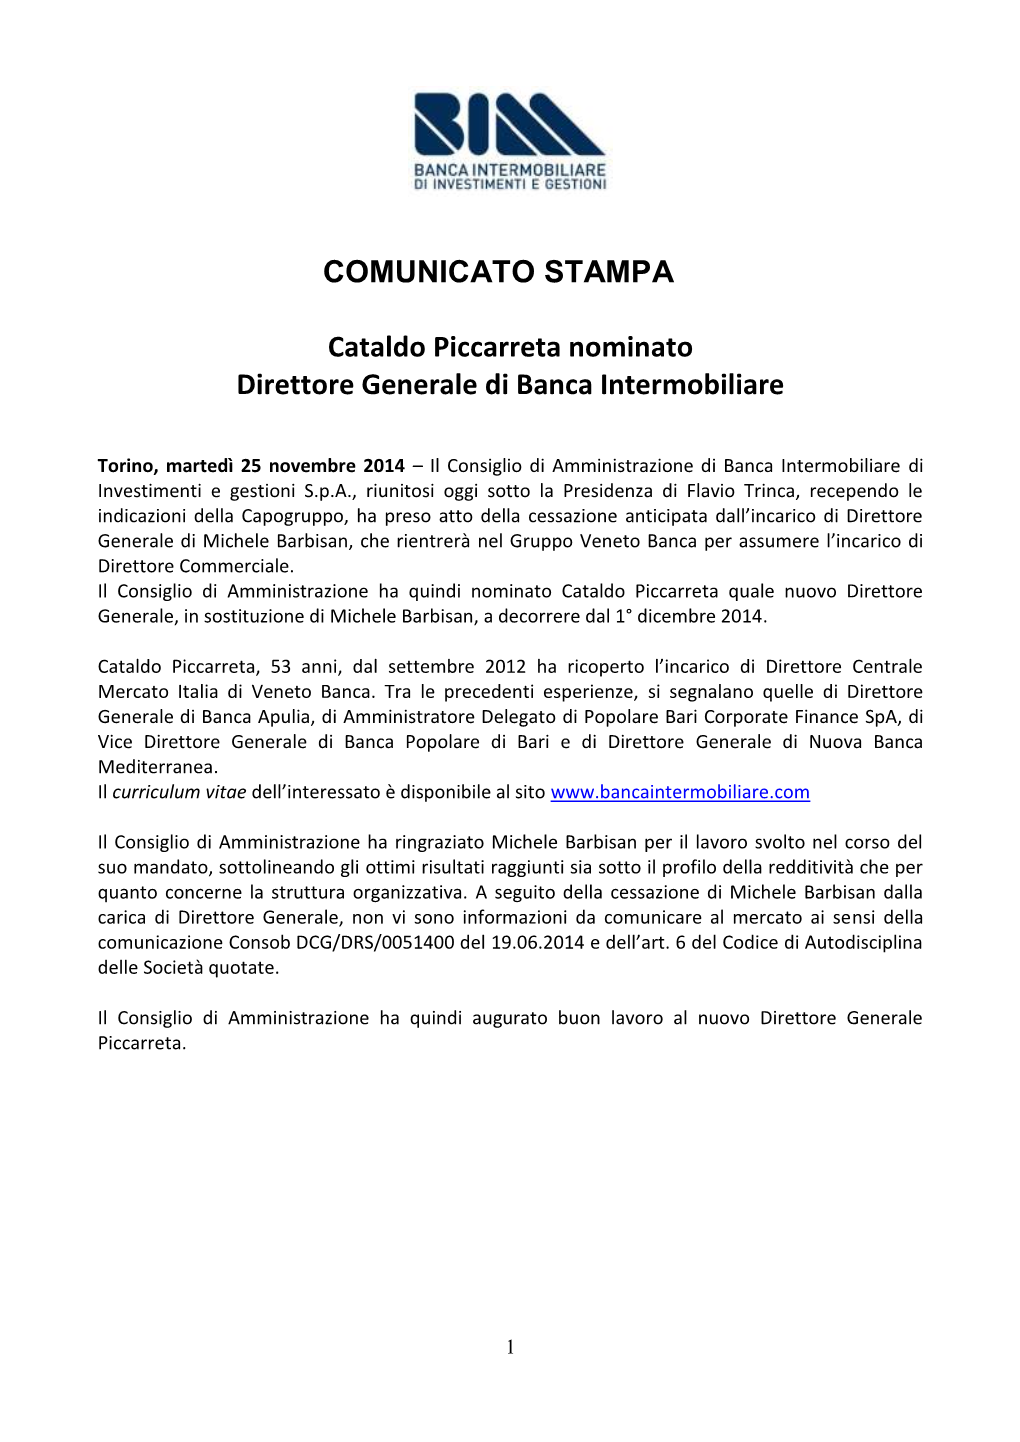 COMUNICATO STAMPA Cataldo Piccarreta Nominato Direttore Generale Di Banca Intermobiliare